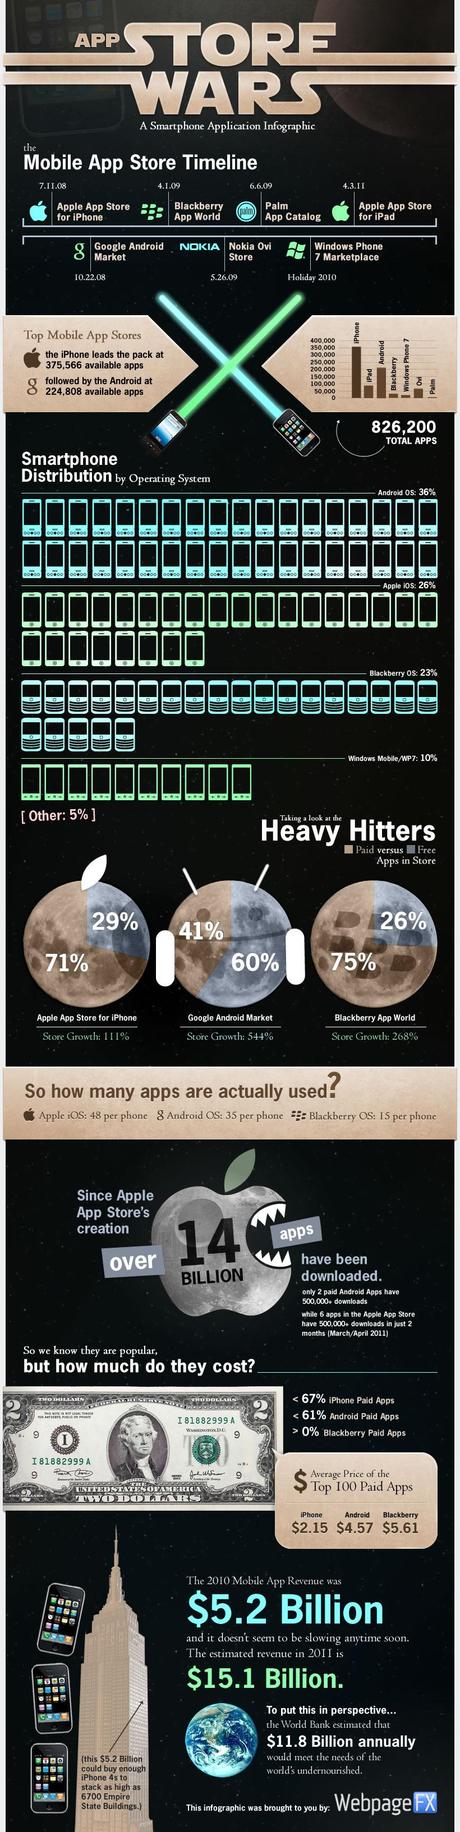 store wars infographic gnd Statistiques sur les applications de Smartphones